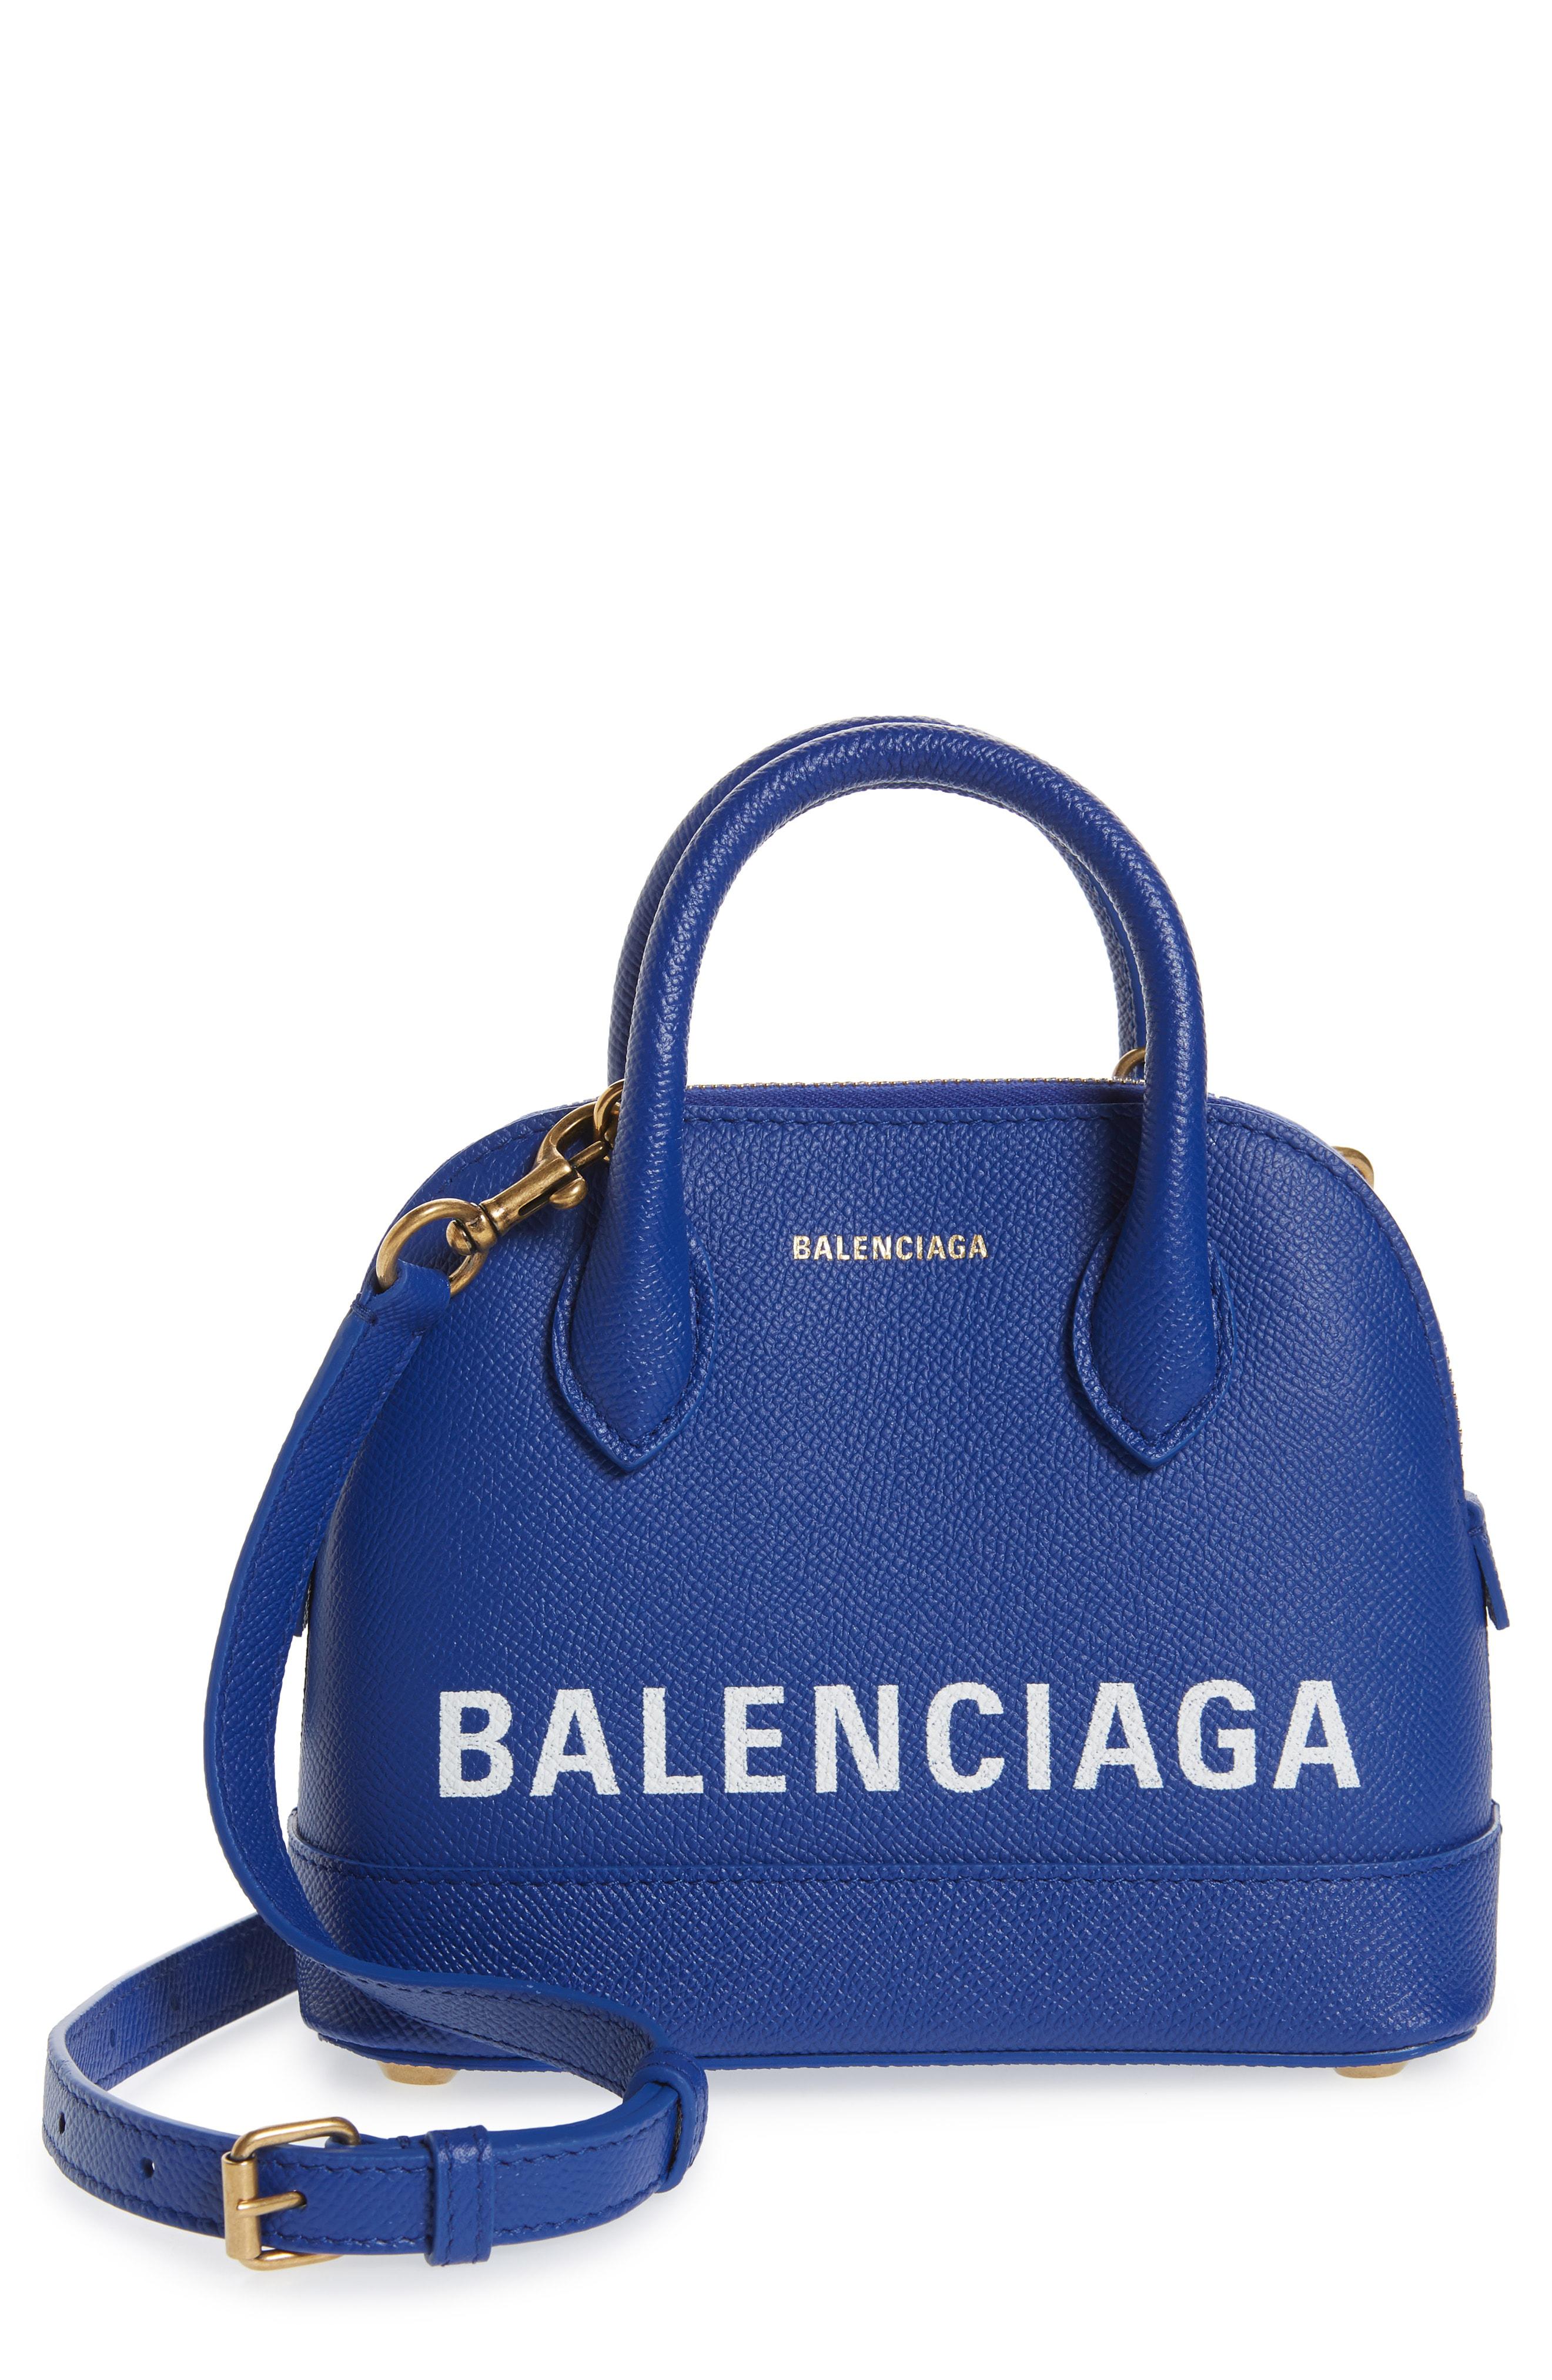 Balenciaga Logo Ville Bag Leather Small Blue 21348436